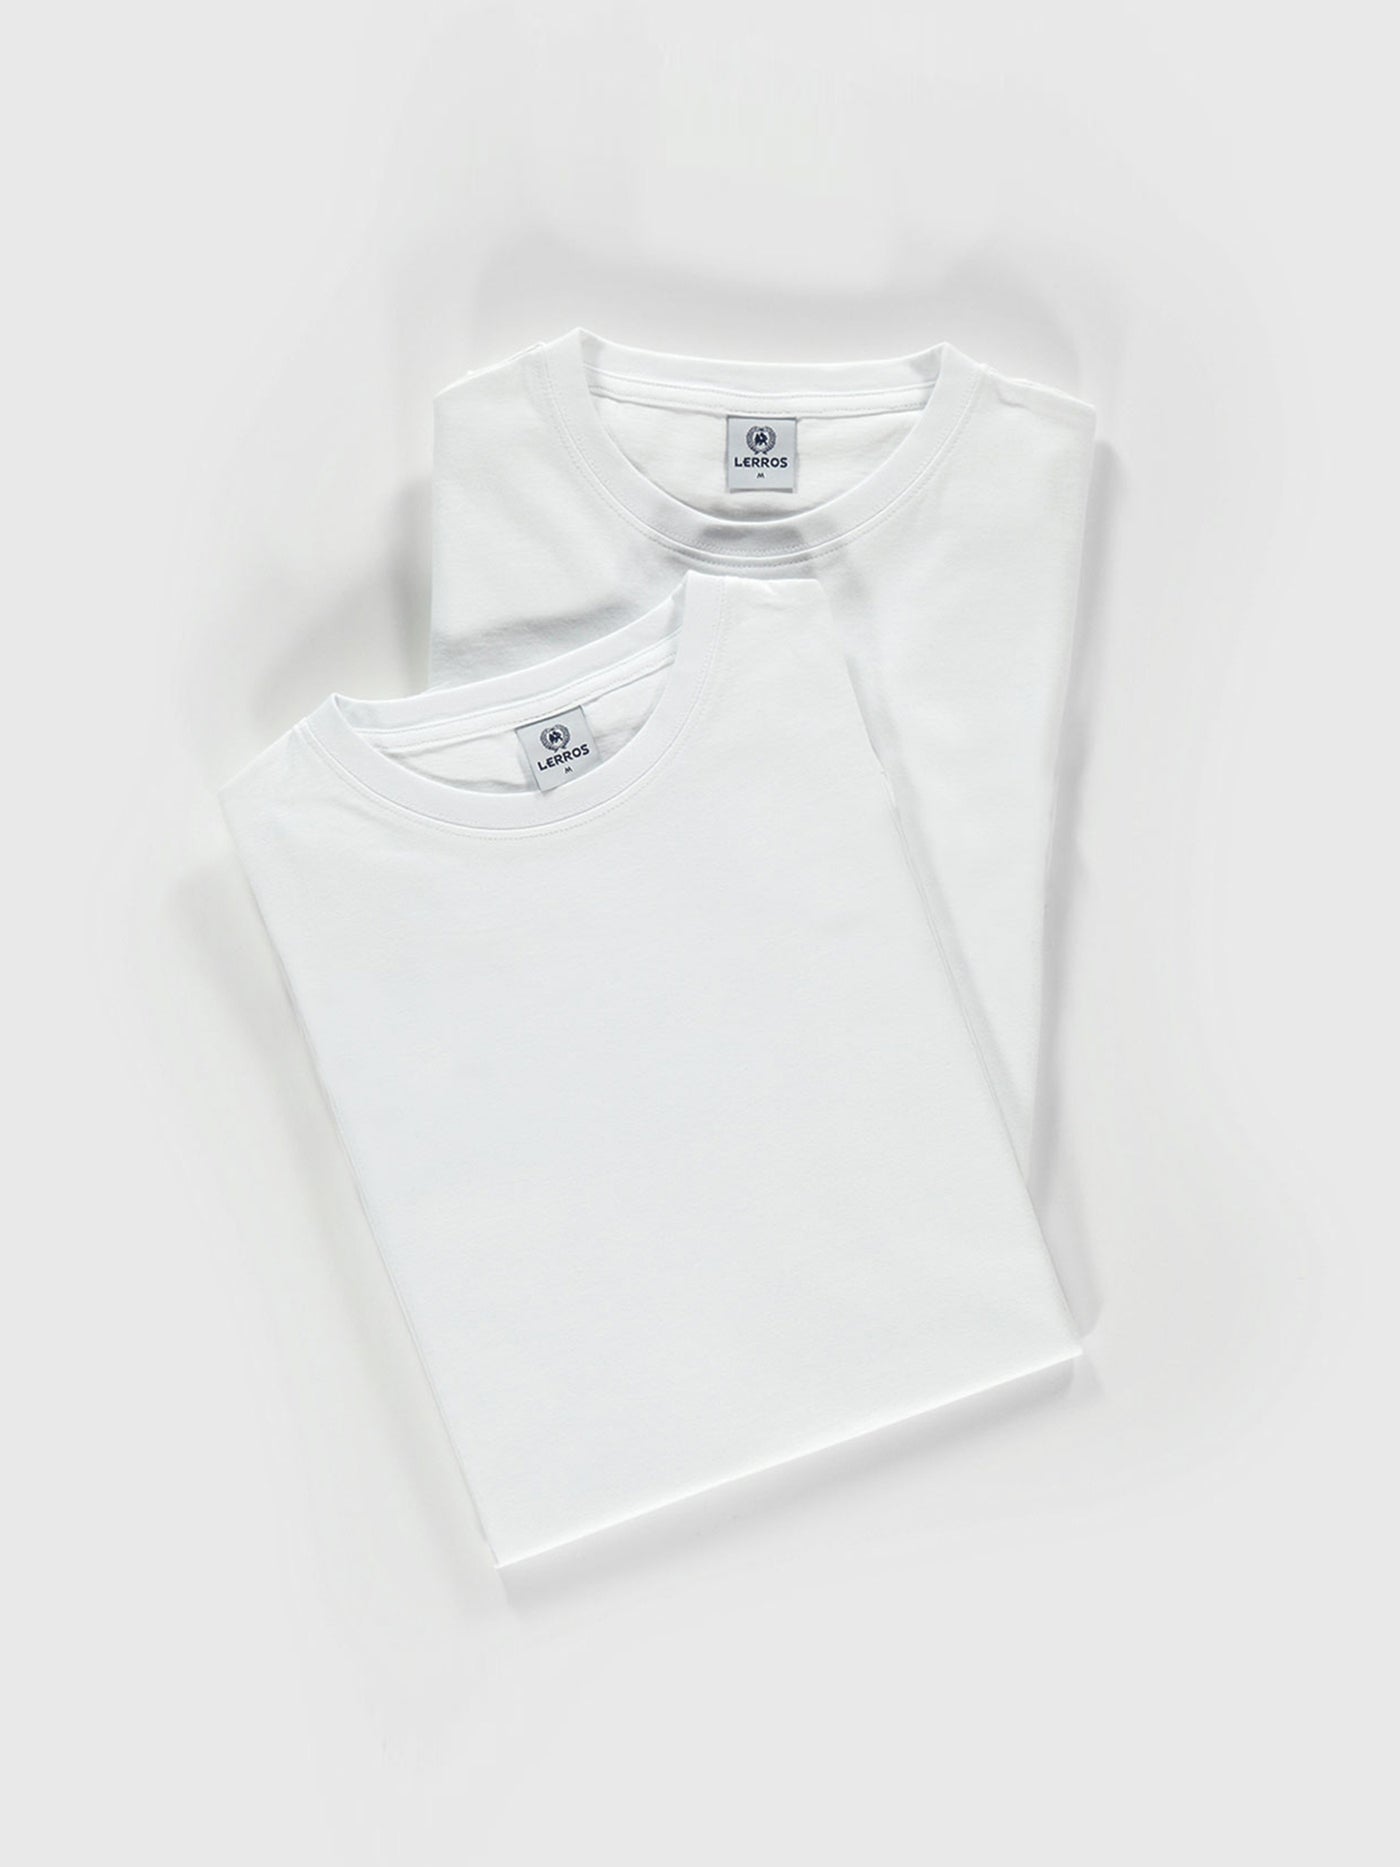 Doppelpack T-Shirt Rundhals in hochwertiger Baumwollqualität